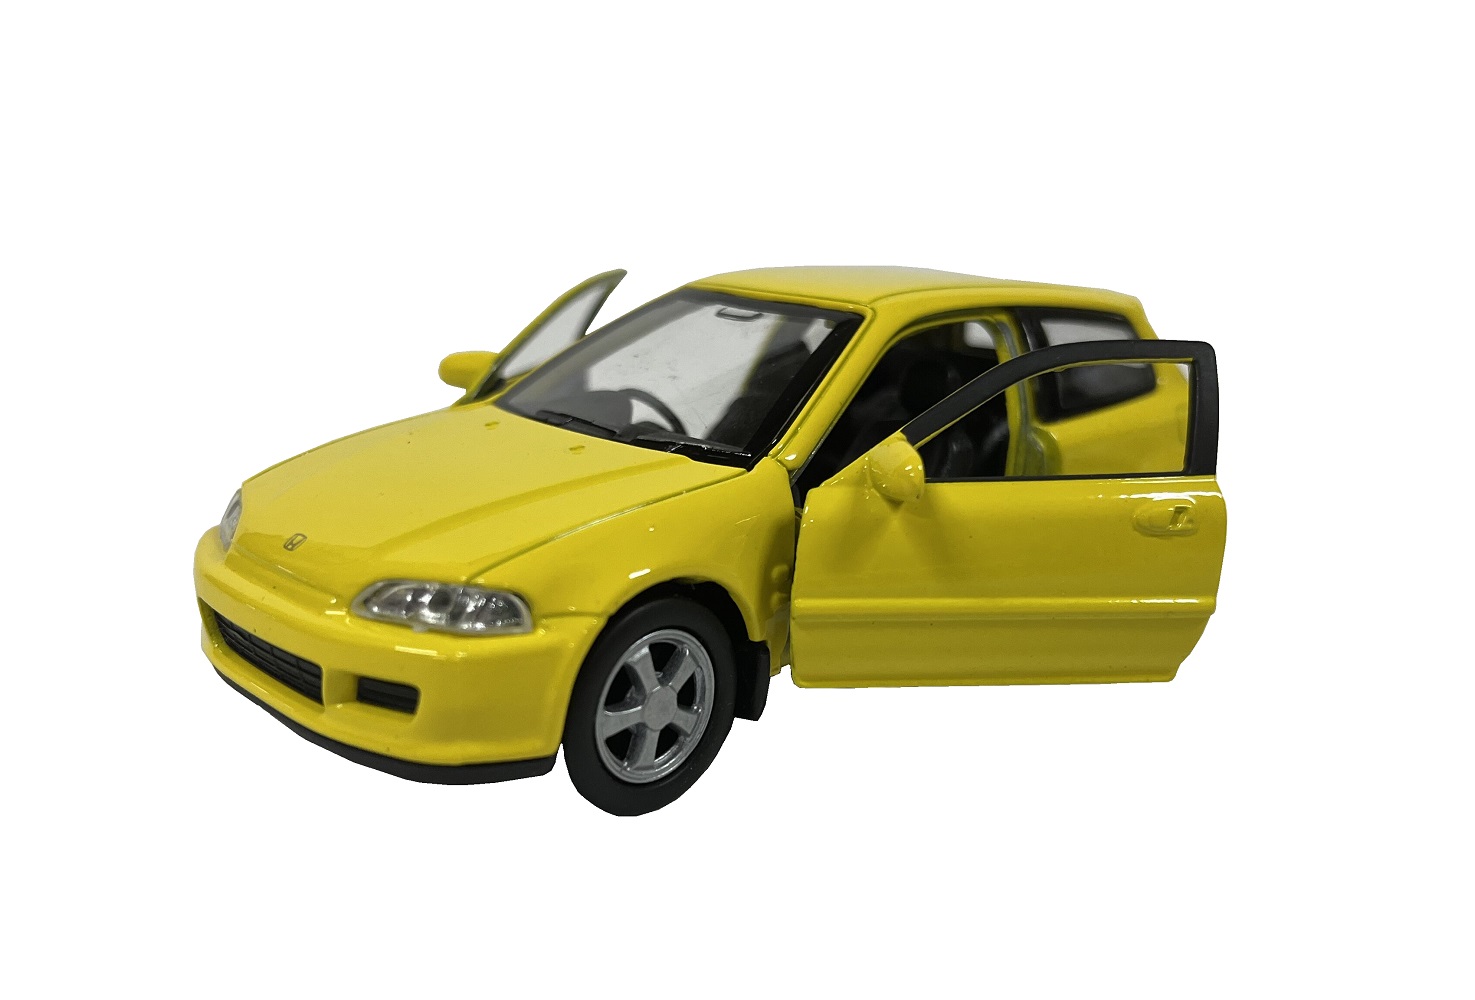 Модель машины Welly 1:38 Honda Civic EG6 желтый 43813 модель для сборки motormax автомобиль honda civic coupe 2000 года 1 24 75120 7